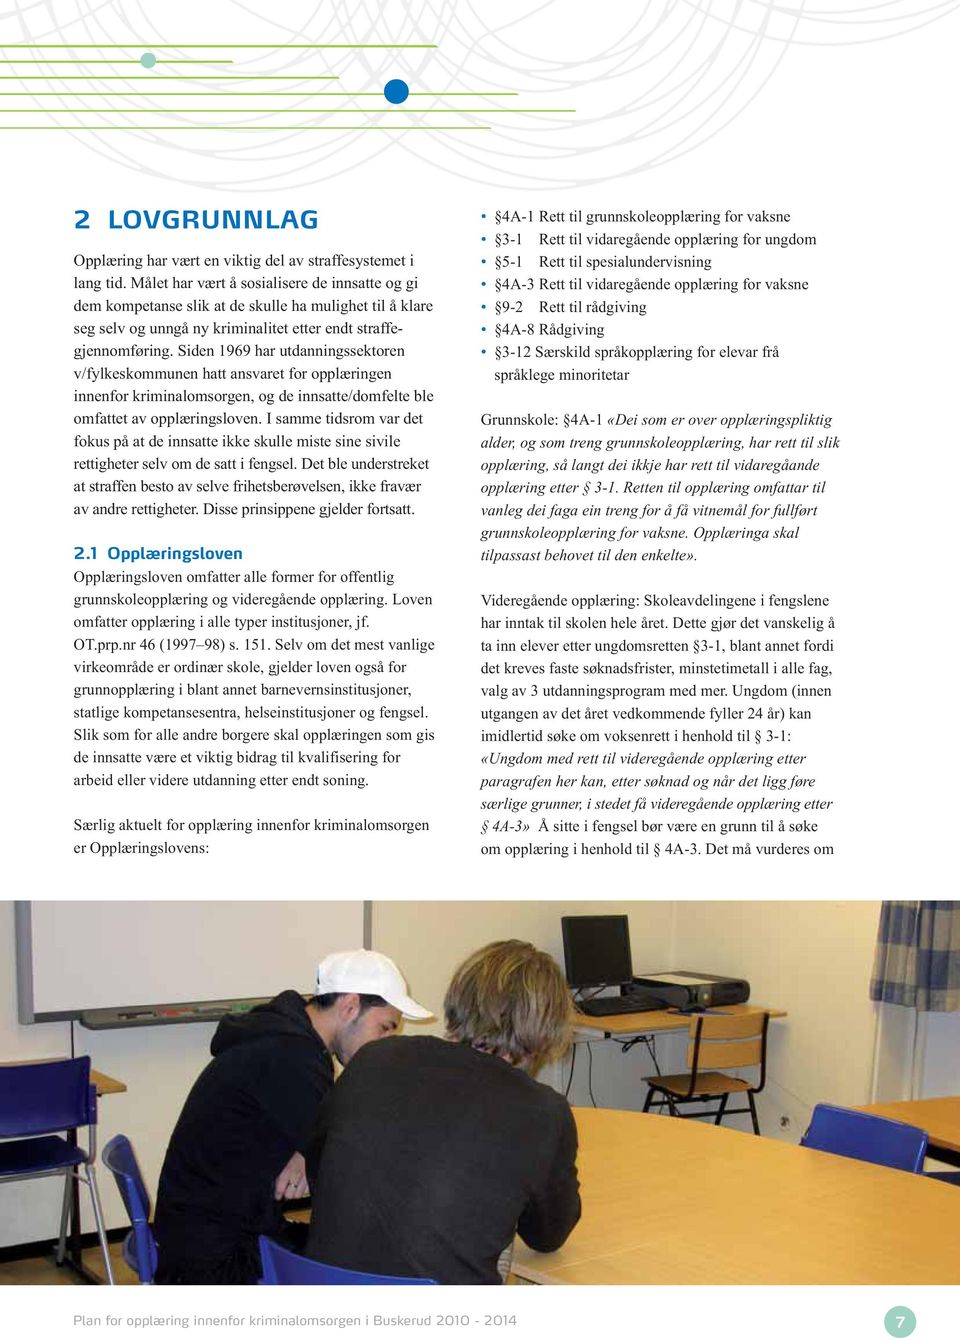 Siden 1969 har utdanningssektoren v/fylkeskommunen hatt ansvaret for opplæringen innenfor kriminalomsorgen, og de innsatte/domfelte ble omfattet av opplæringsloven.